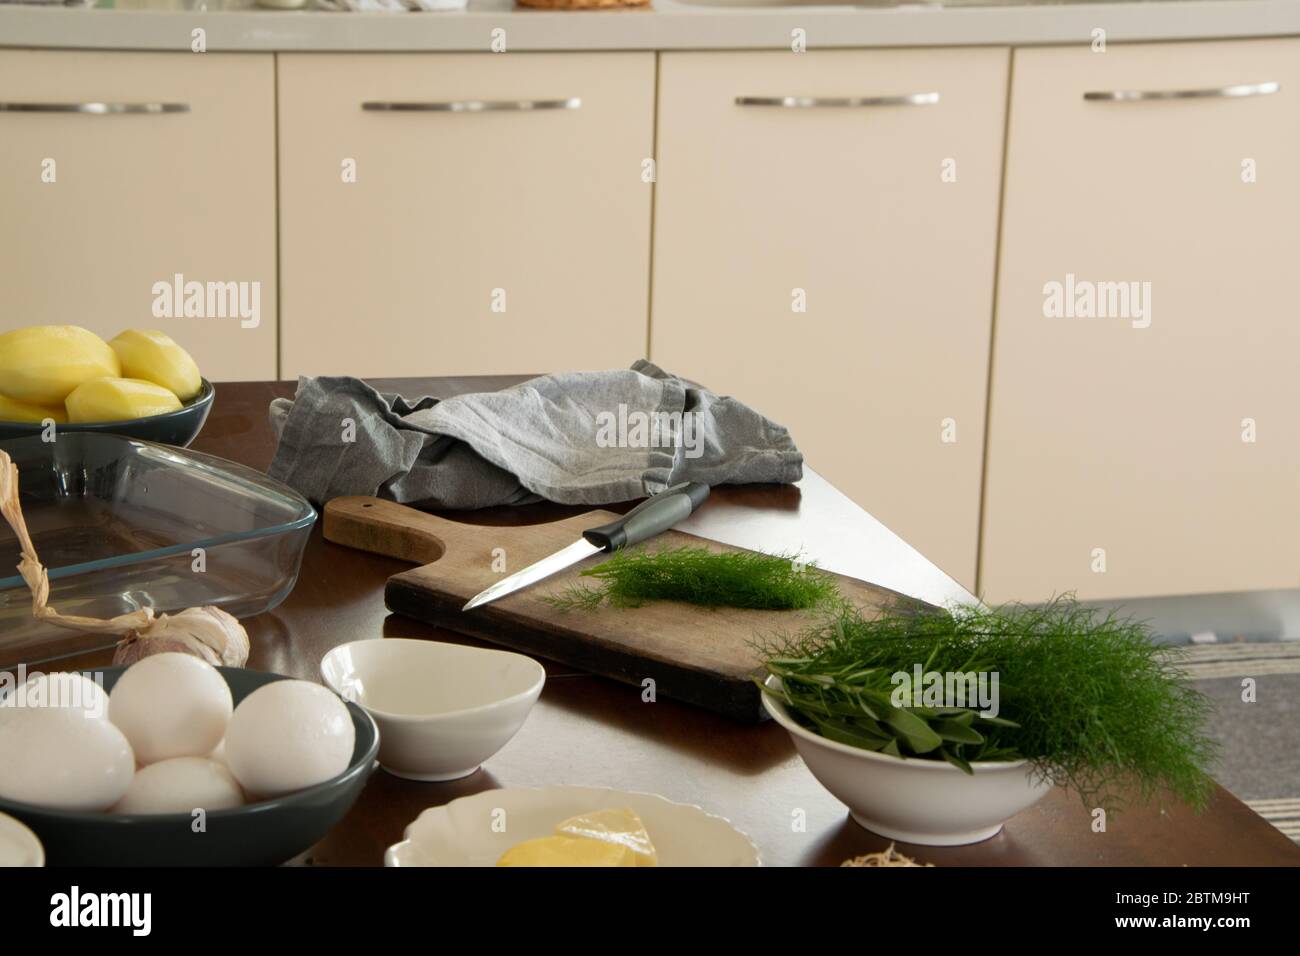 Cucina casalinga, preparazione di cibo con ingredienti sani Foto Stock